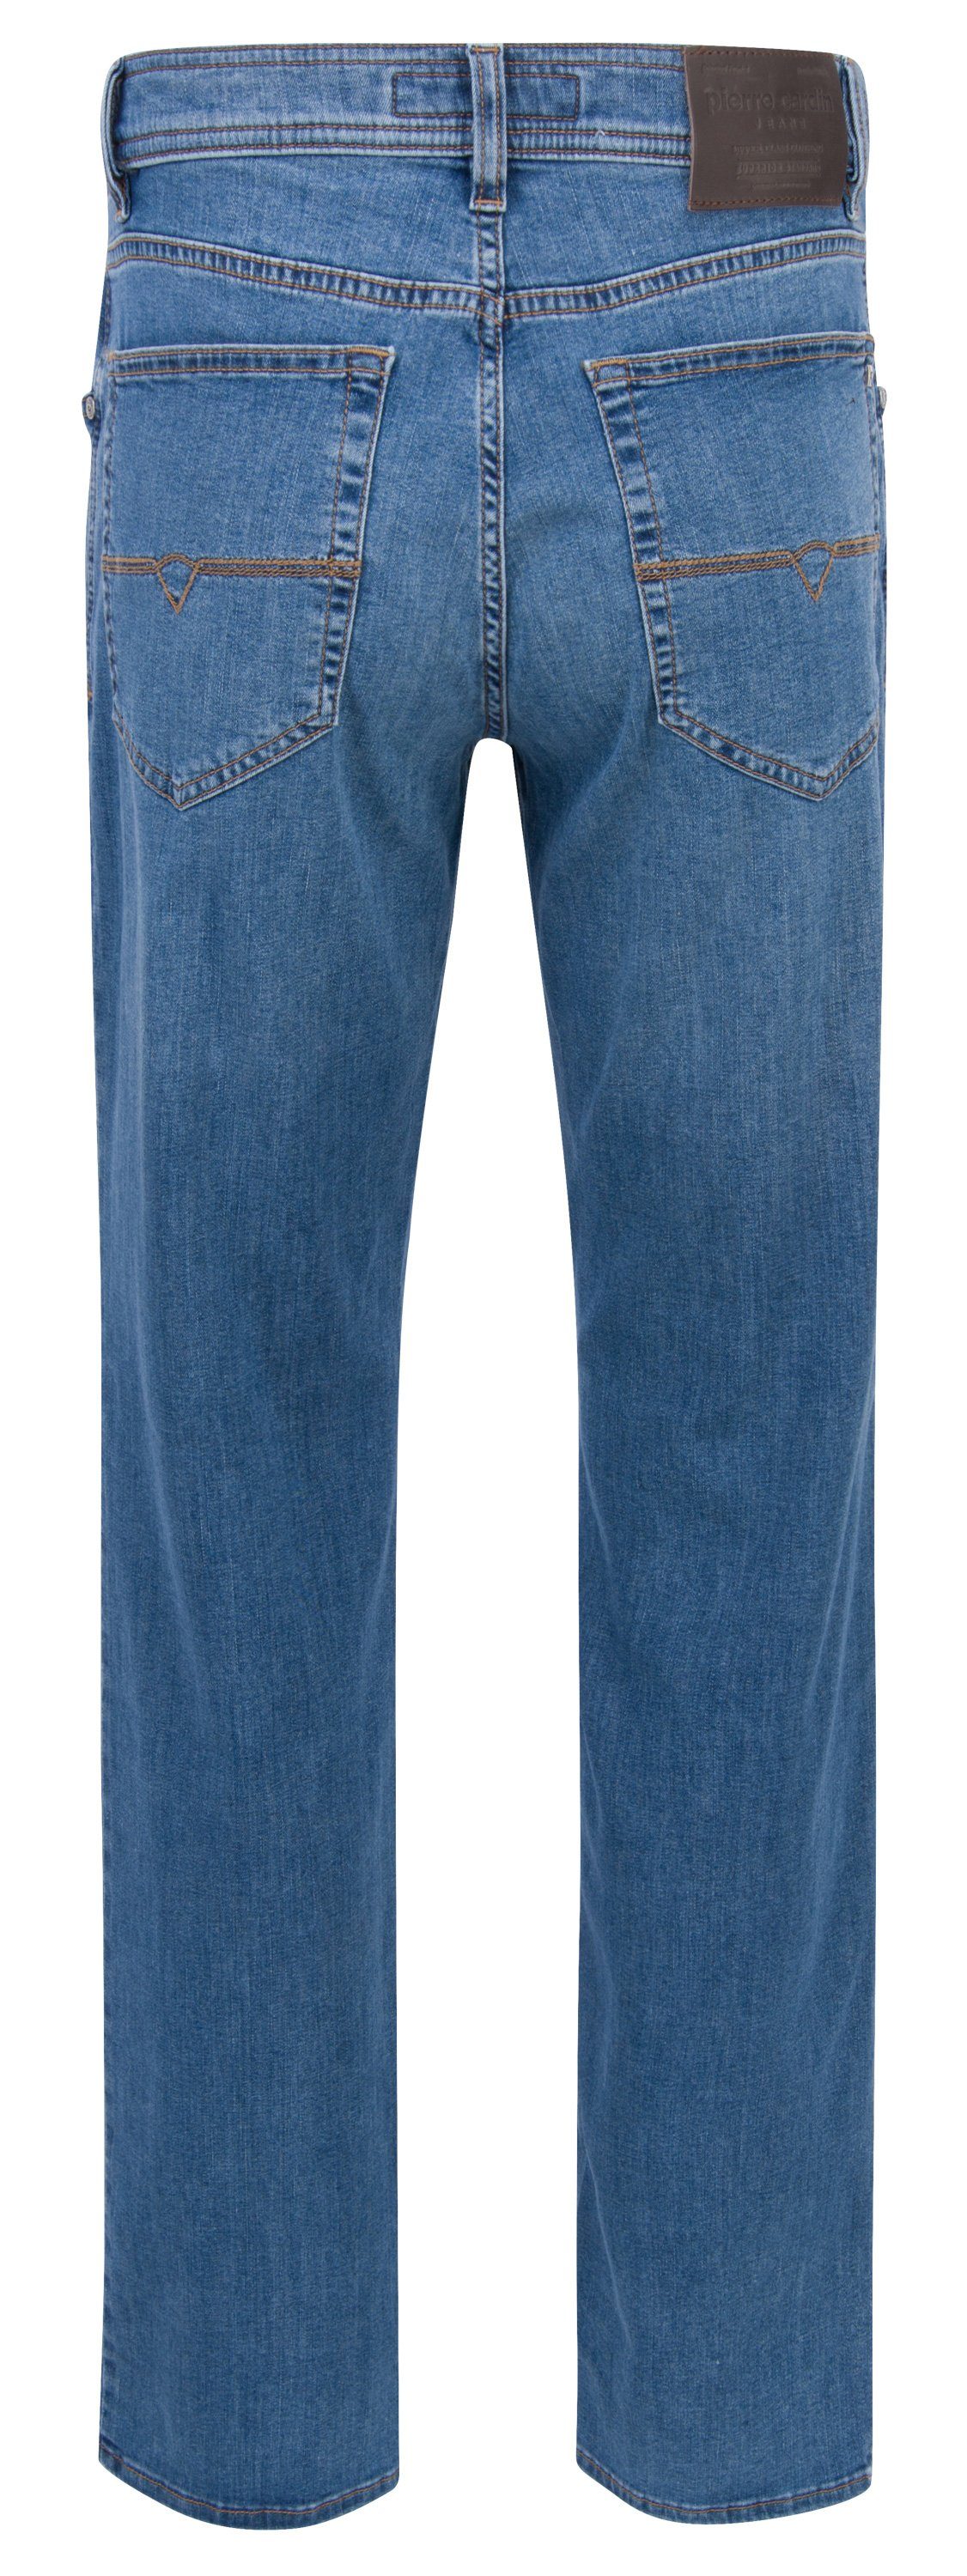 Pierre CARDIN PIERRE used 5-Pocket-Jeans blue 3231 Cardin 7301.06 DIJON mid